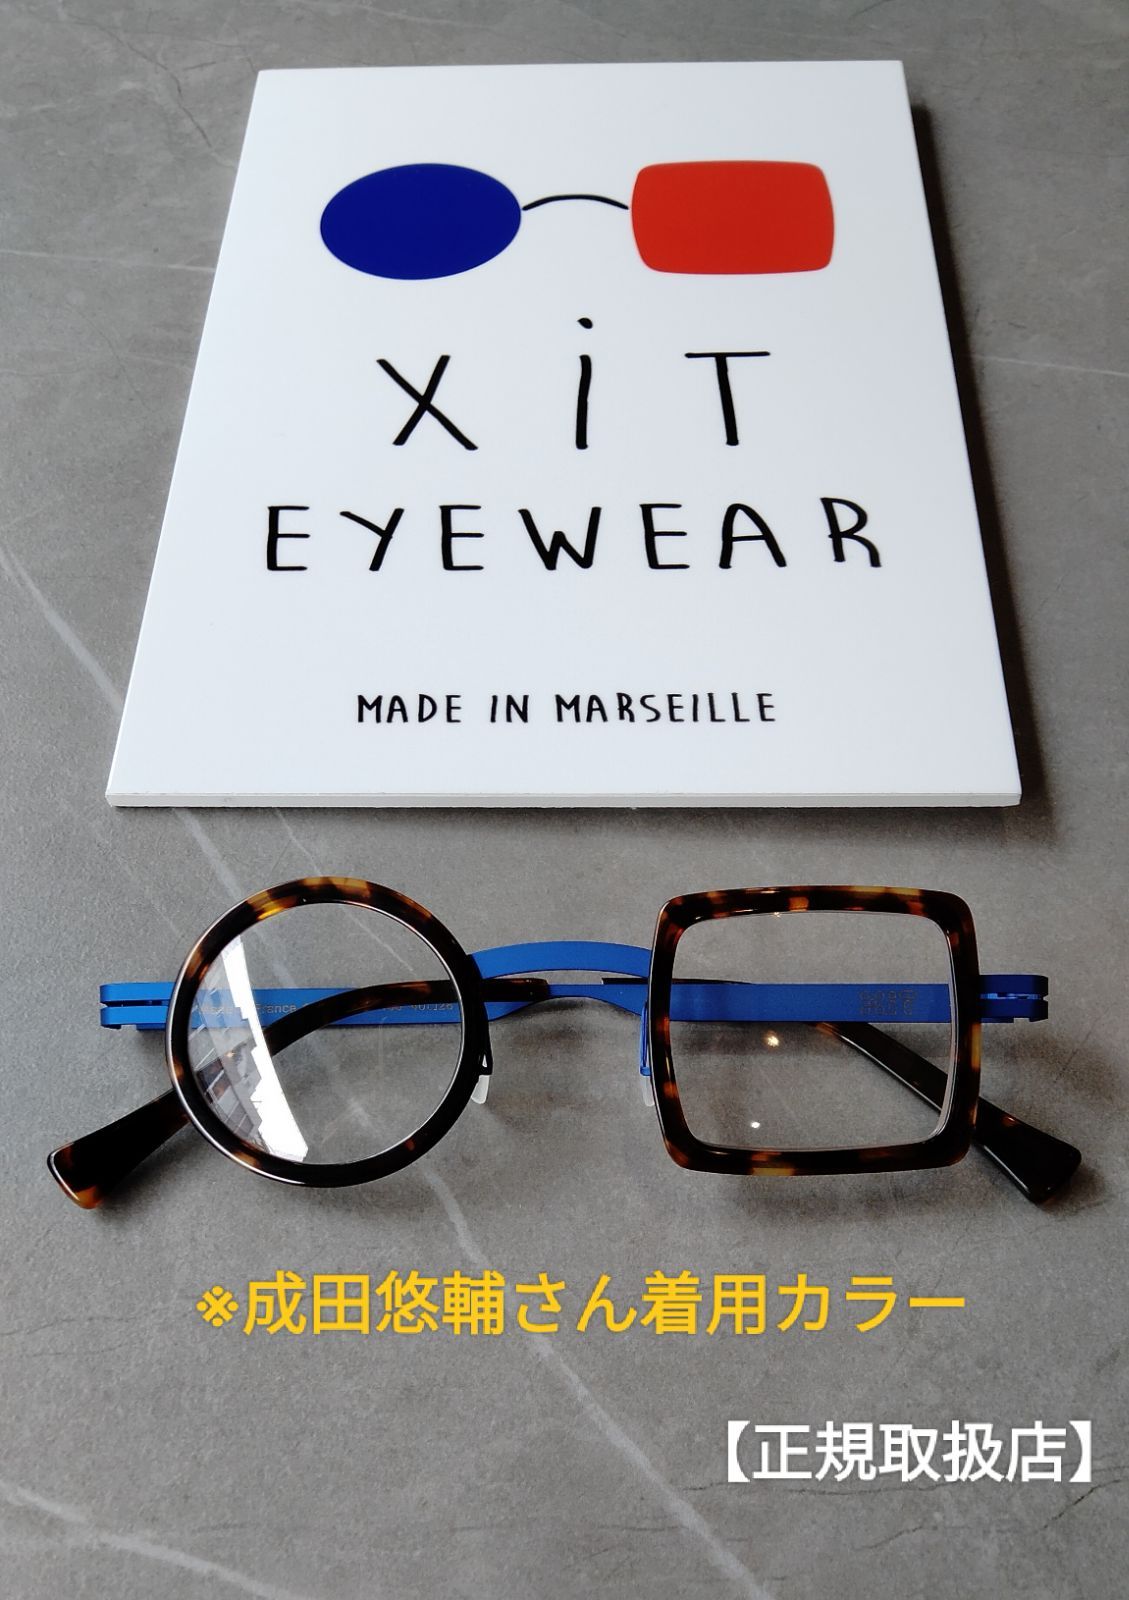 成田悠輔愛用メガネ XIT eyewear - サングラス